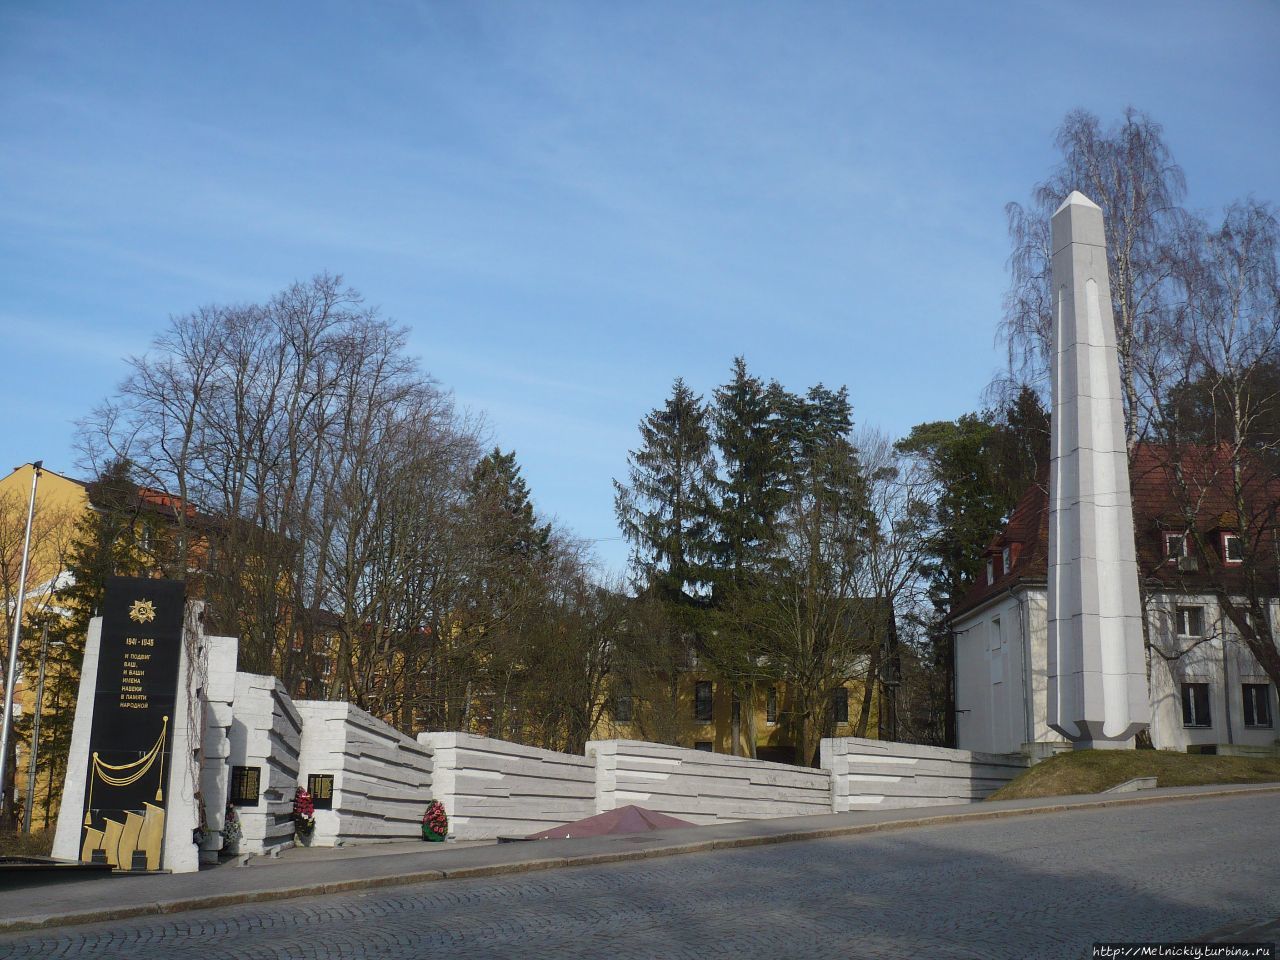 Мемориальный комплекс памяти павших в 1945 году / Memorial complex of the memory of the fallen